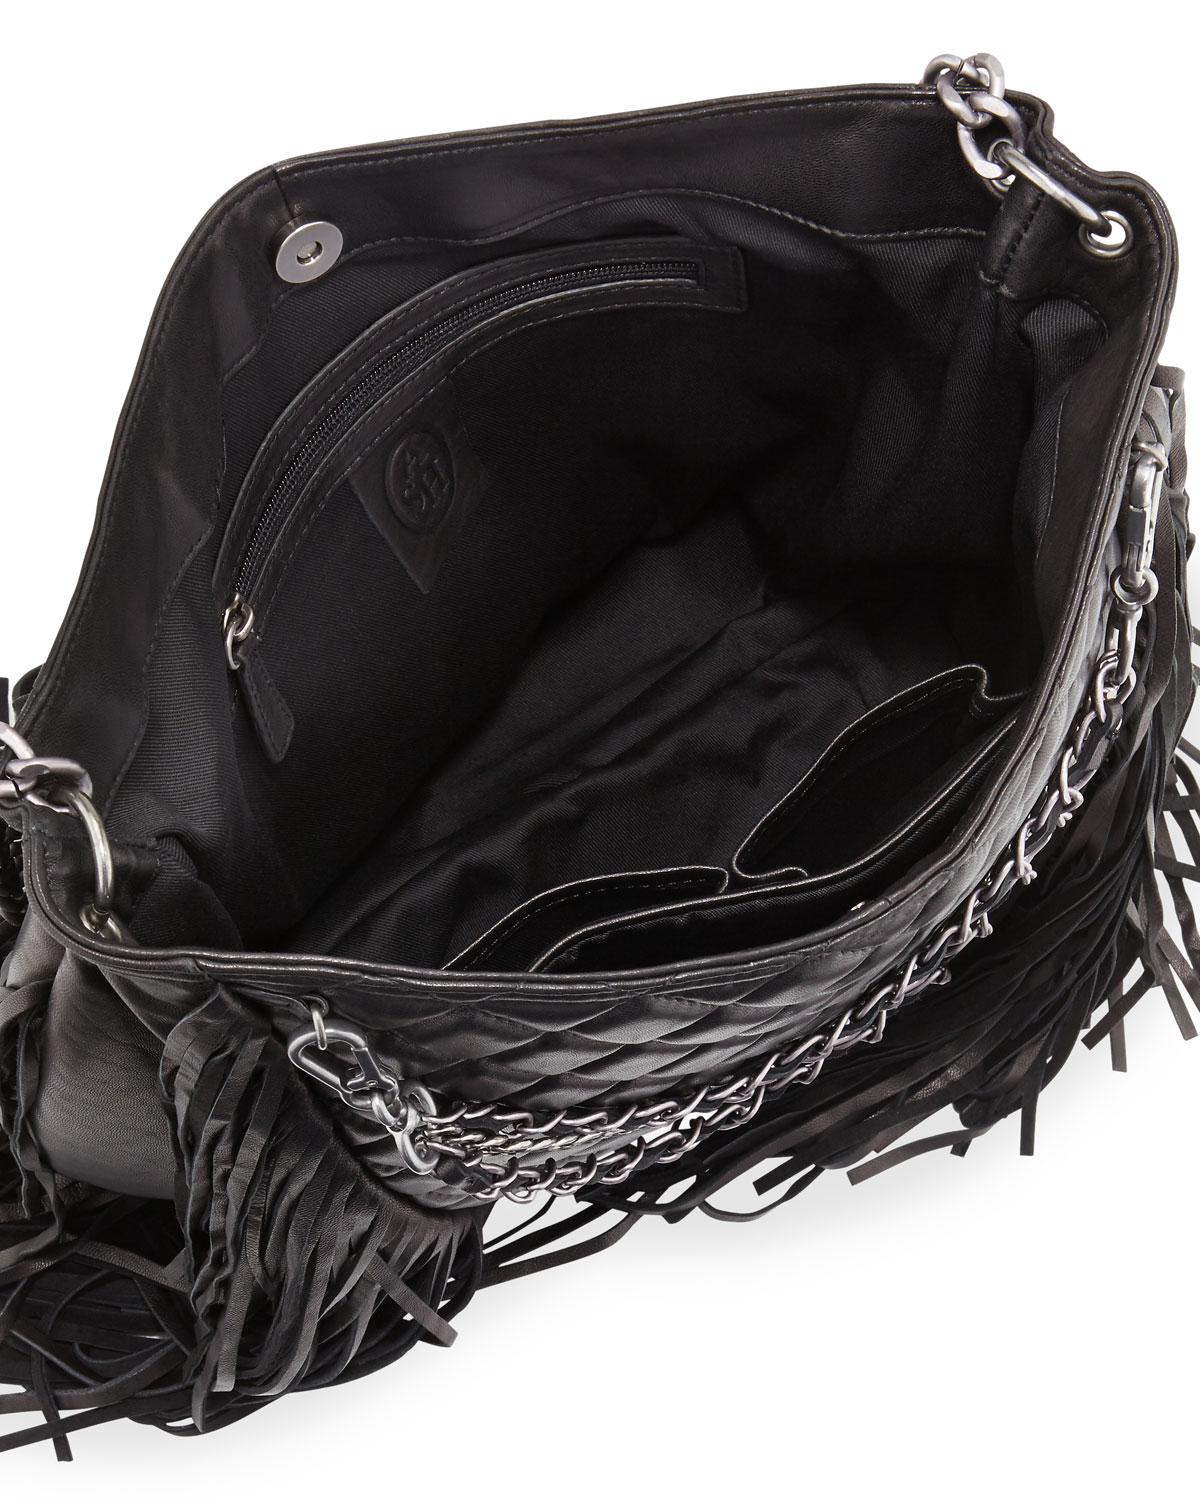 Ash Bijou Quilted Leather Fringe Hobo Bag in Black - Lyst